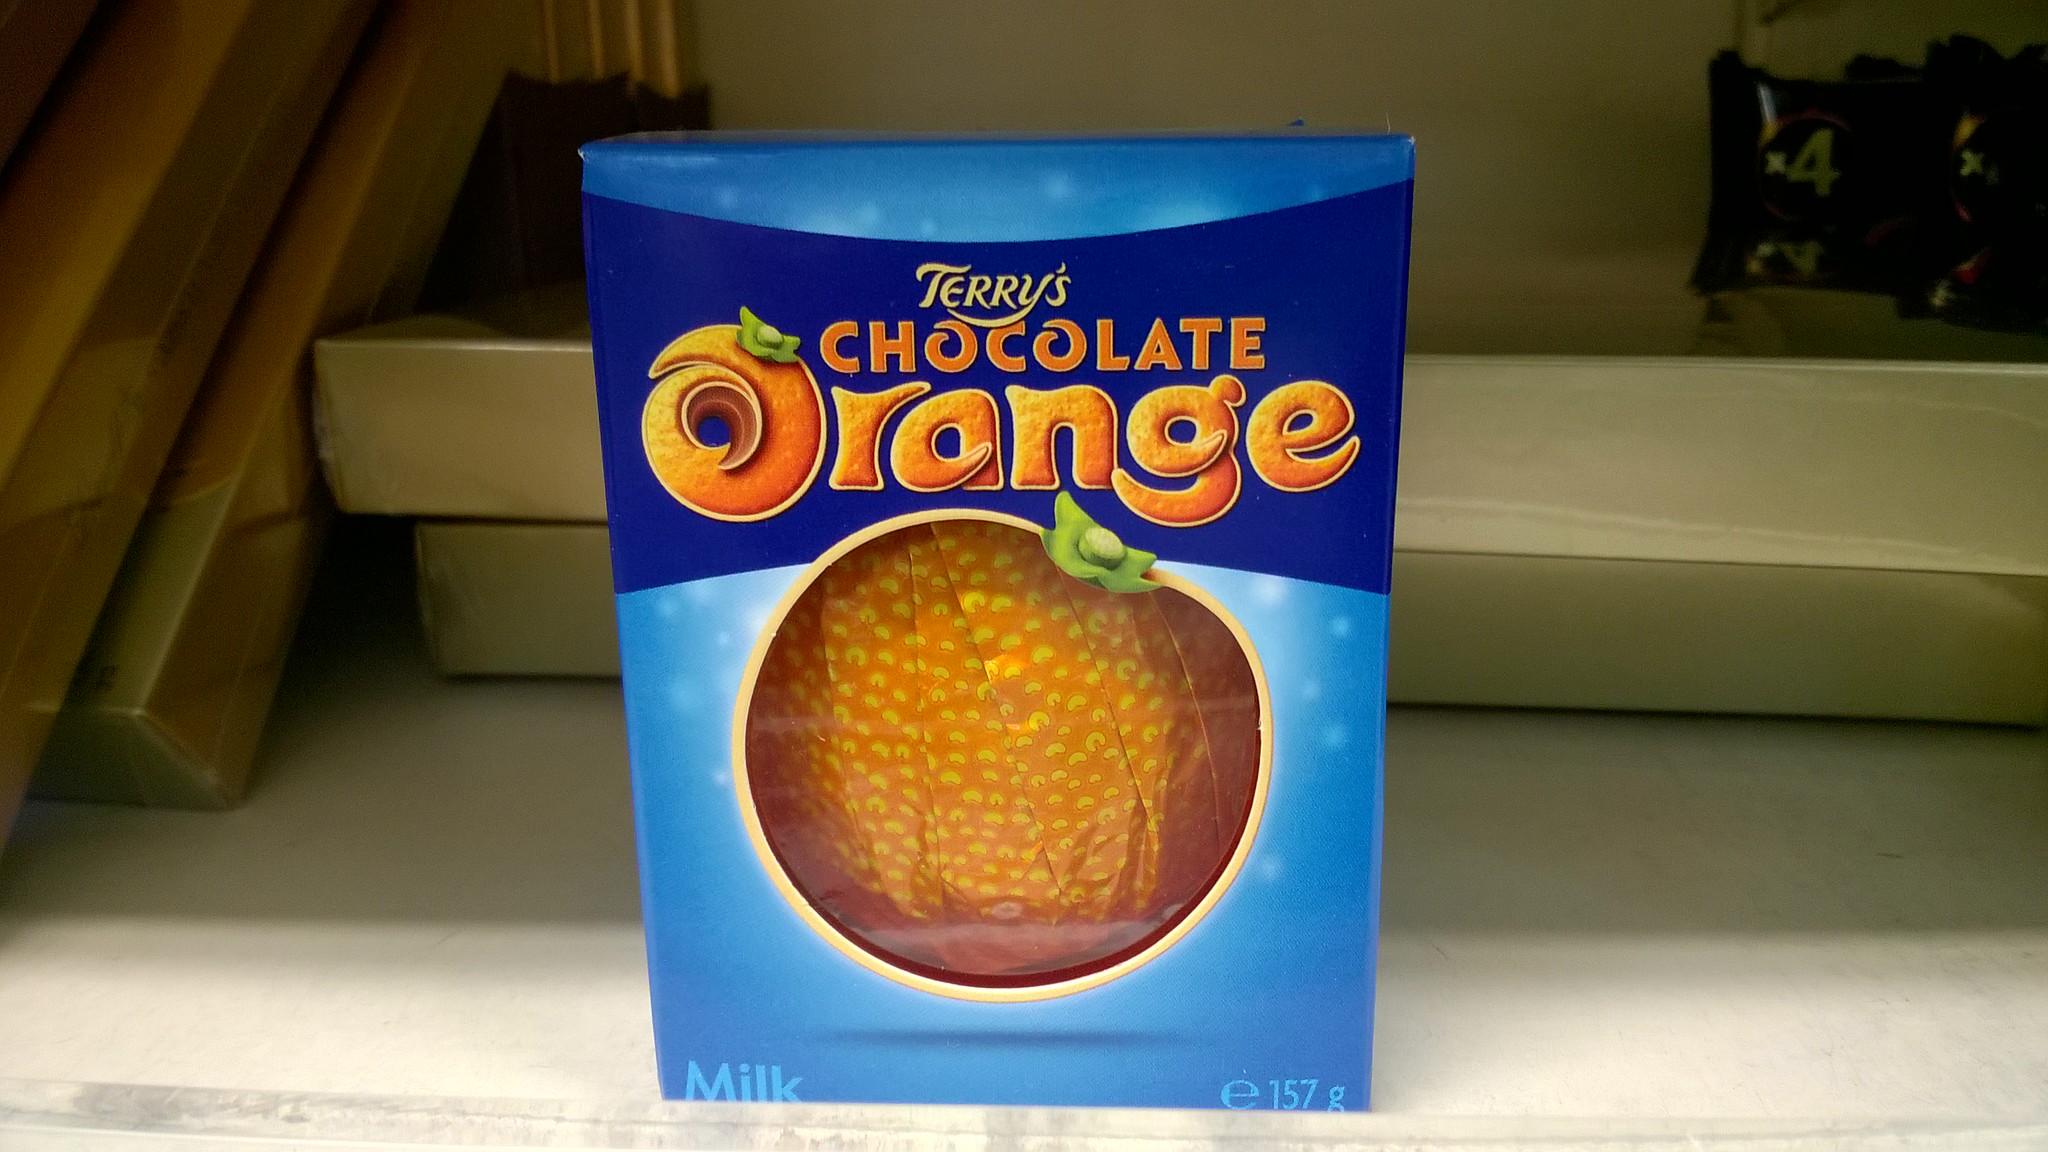 Terry's Chocolate Orange 